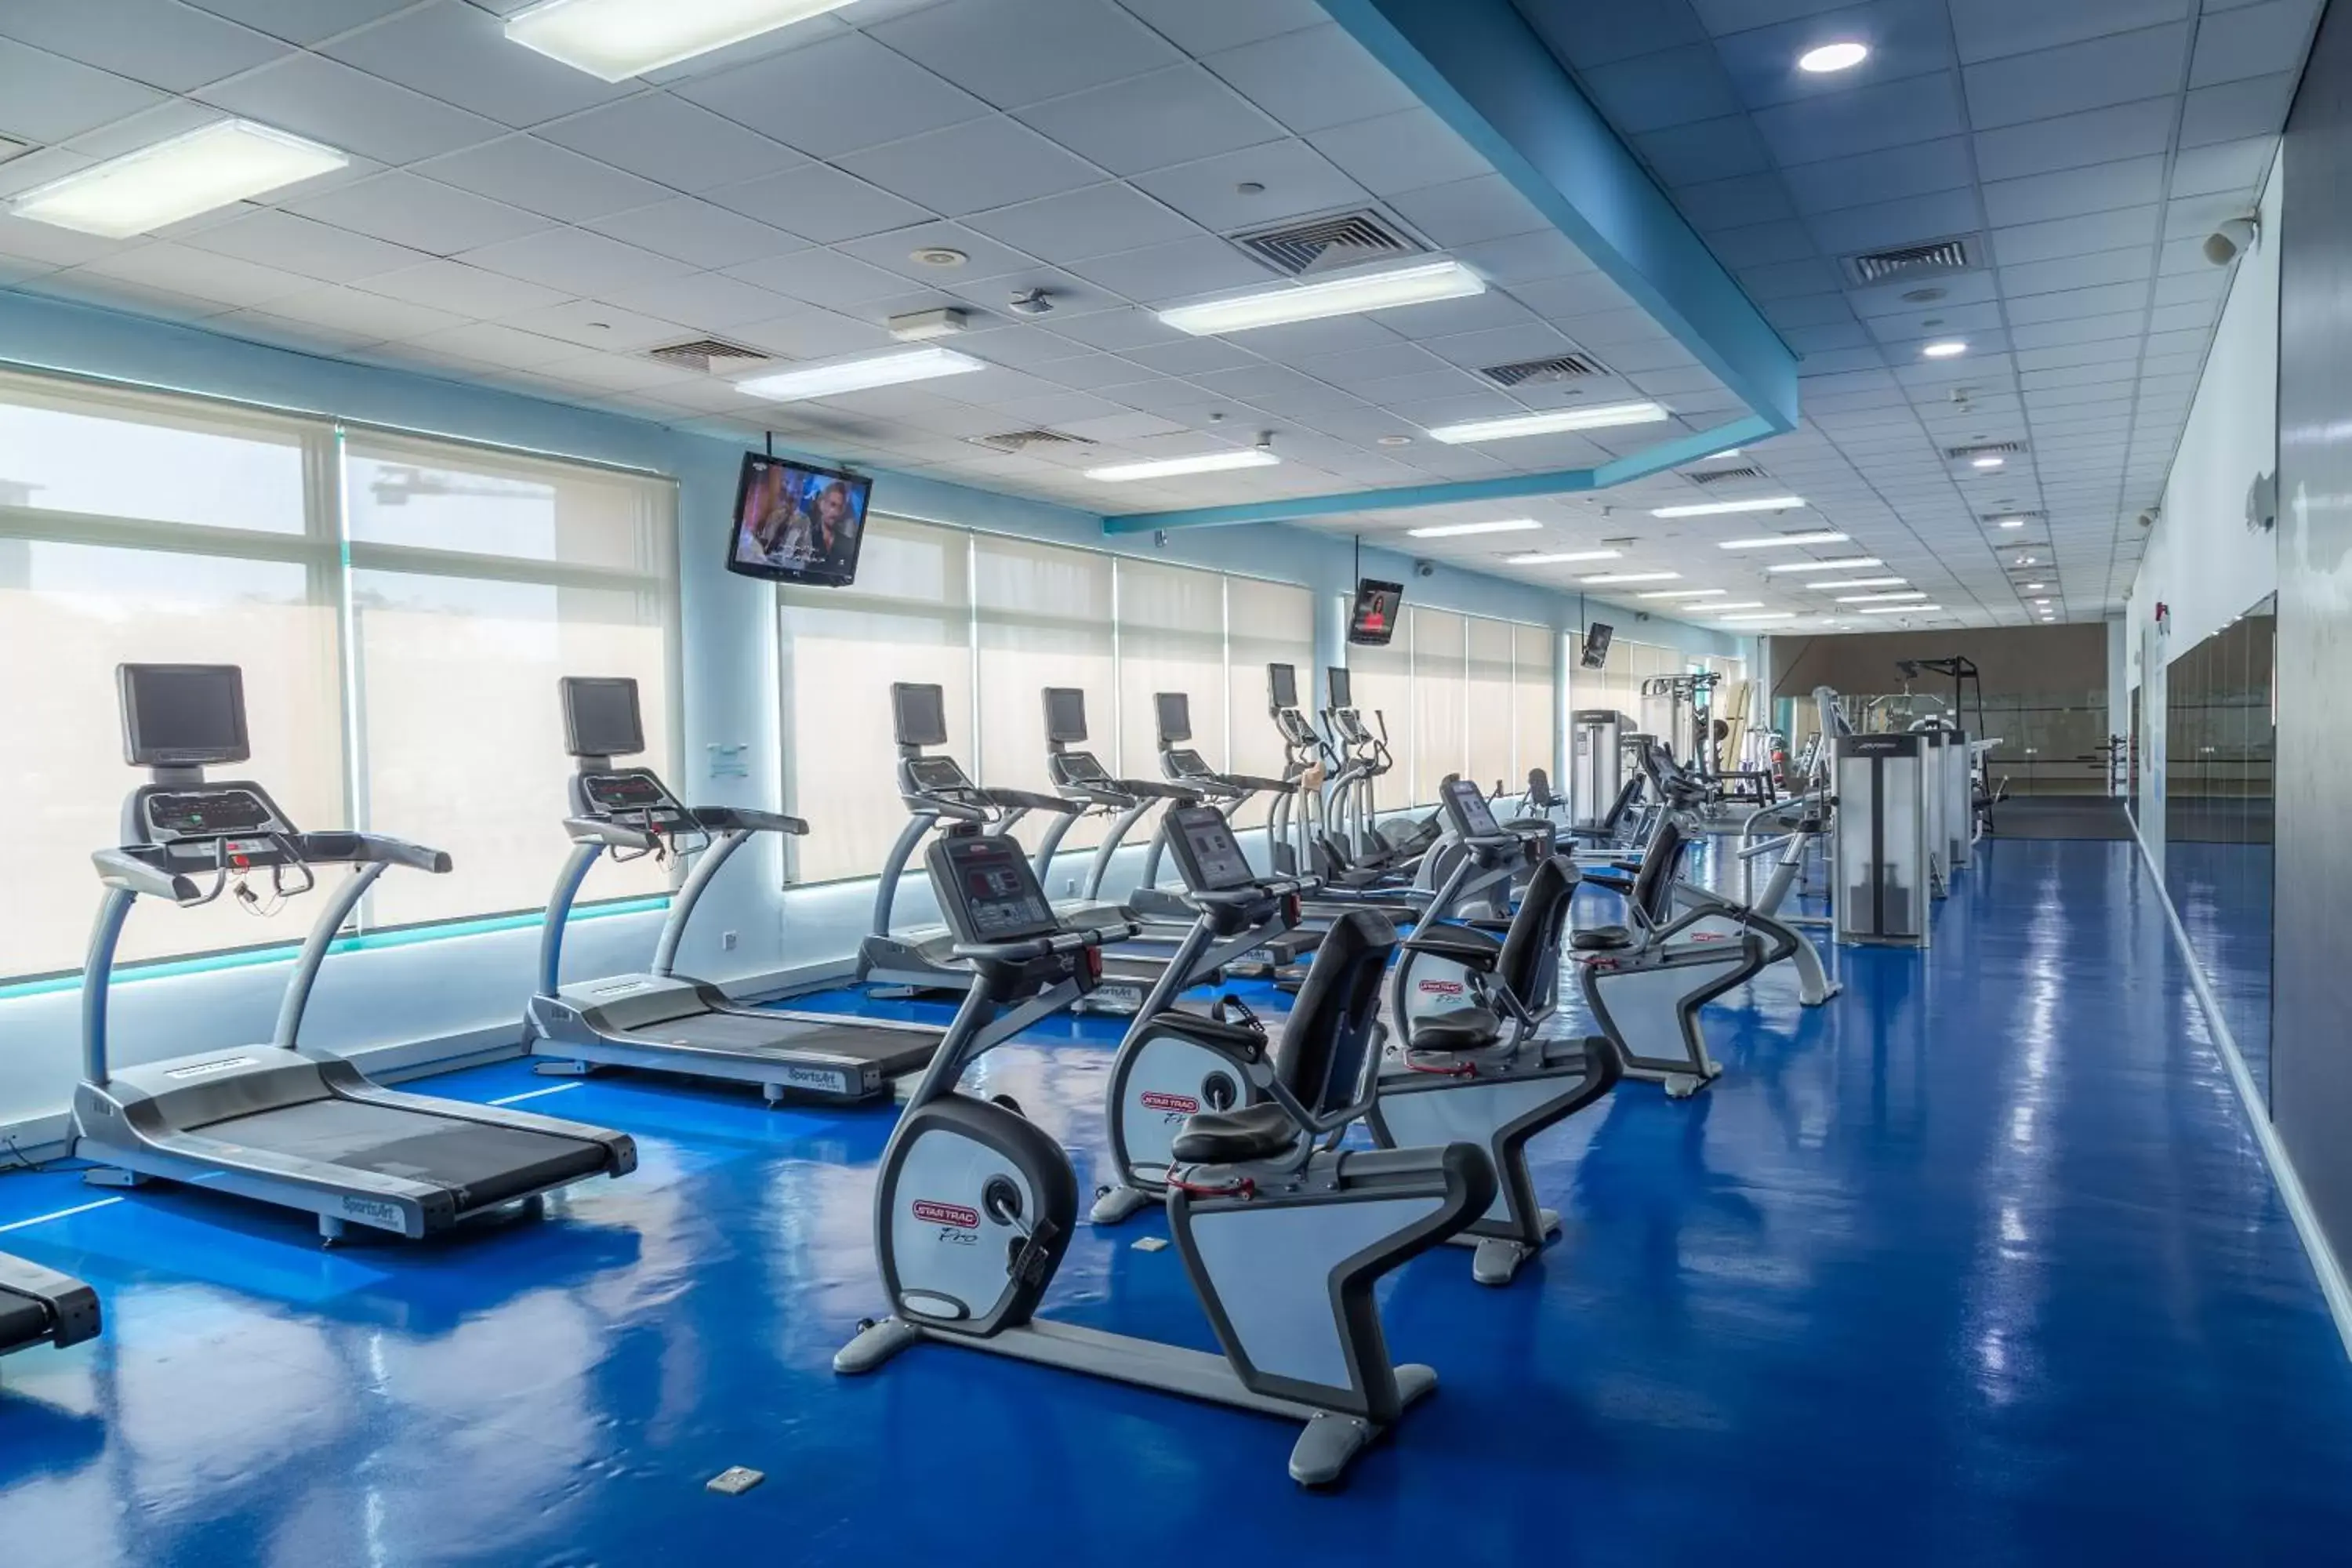 Fitness centre/facilities, Fitness Center/Facilities in Mövenpick Grand Al Bustan